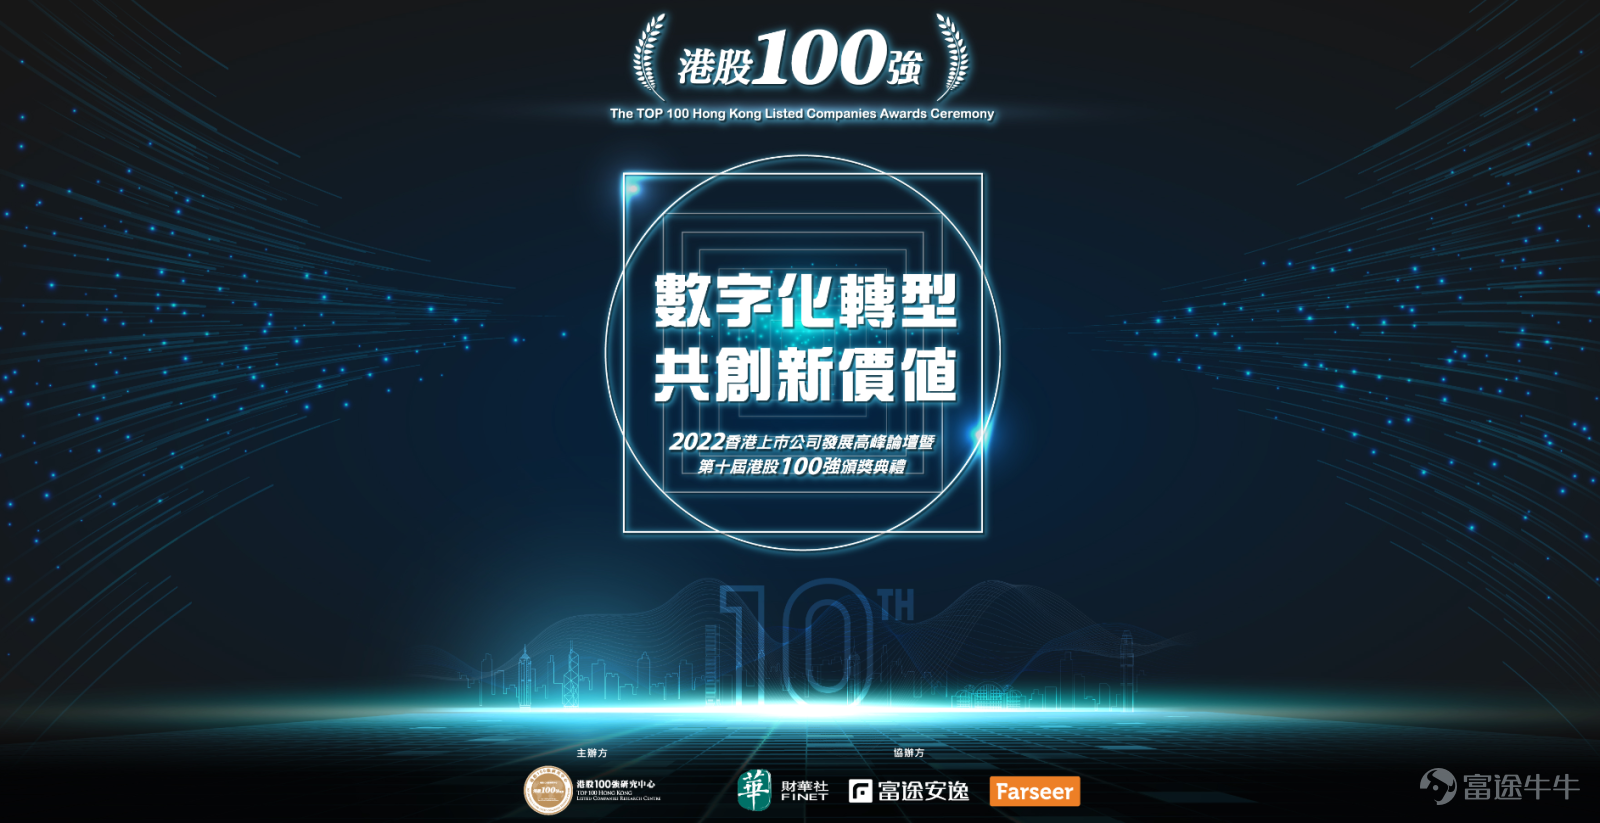 現代牙科集團榮膺第十屆港股100強「醫藥榜單25強」